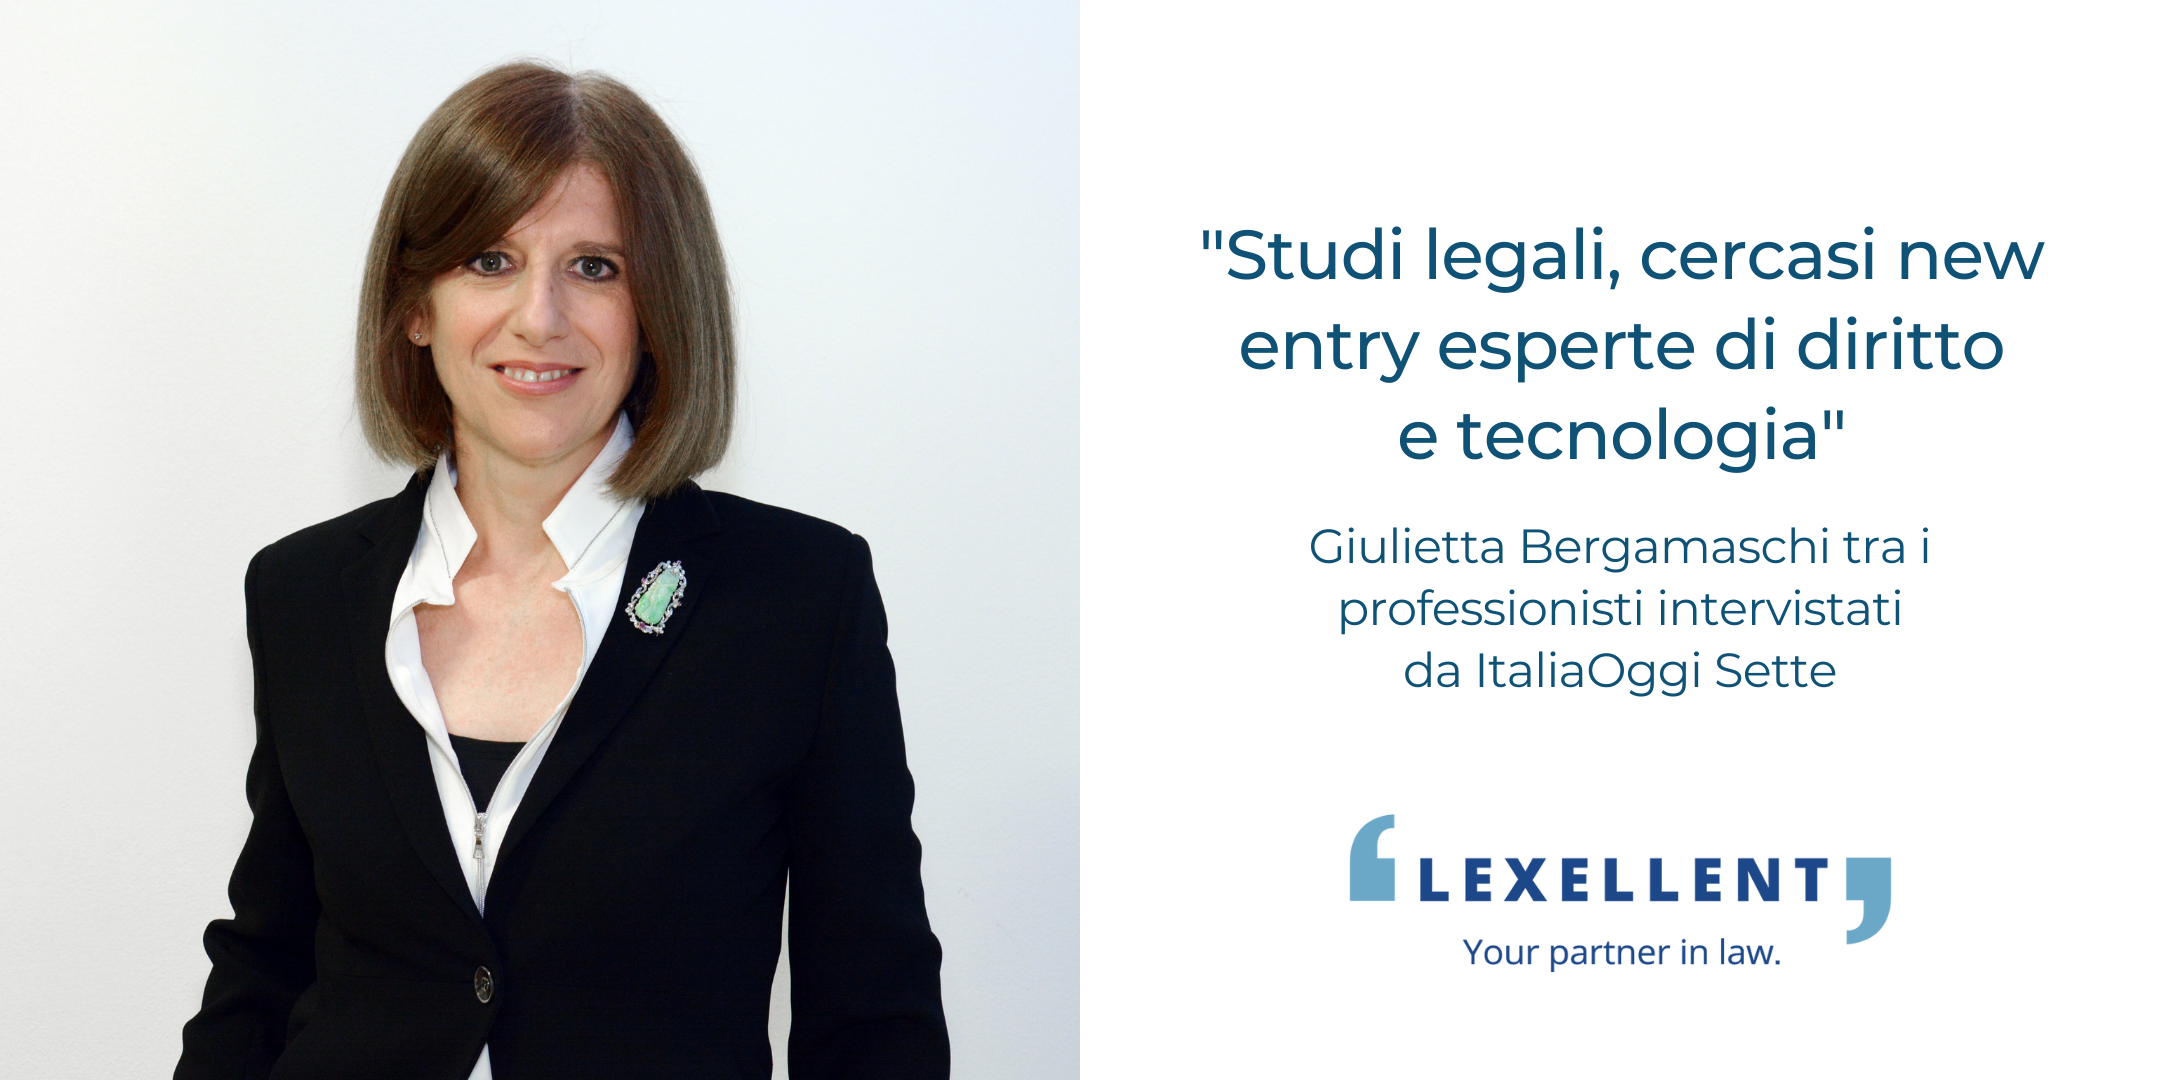 “Studi legali, cercasi new entry esperte di diritto e tecnologia”: Giulietta Bergamaschi intervistata da ItaliaOggi